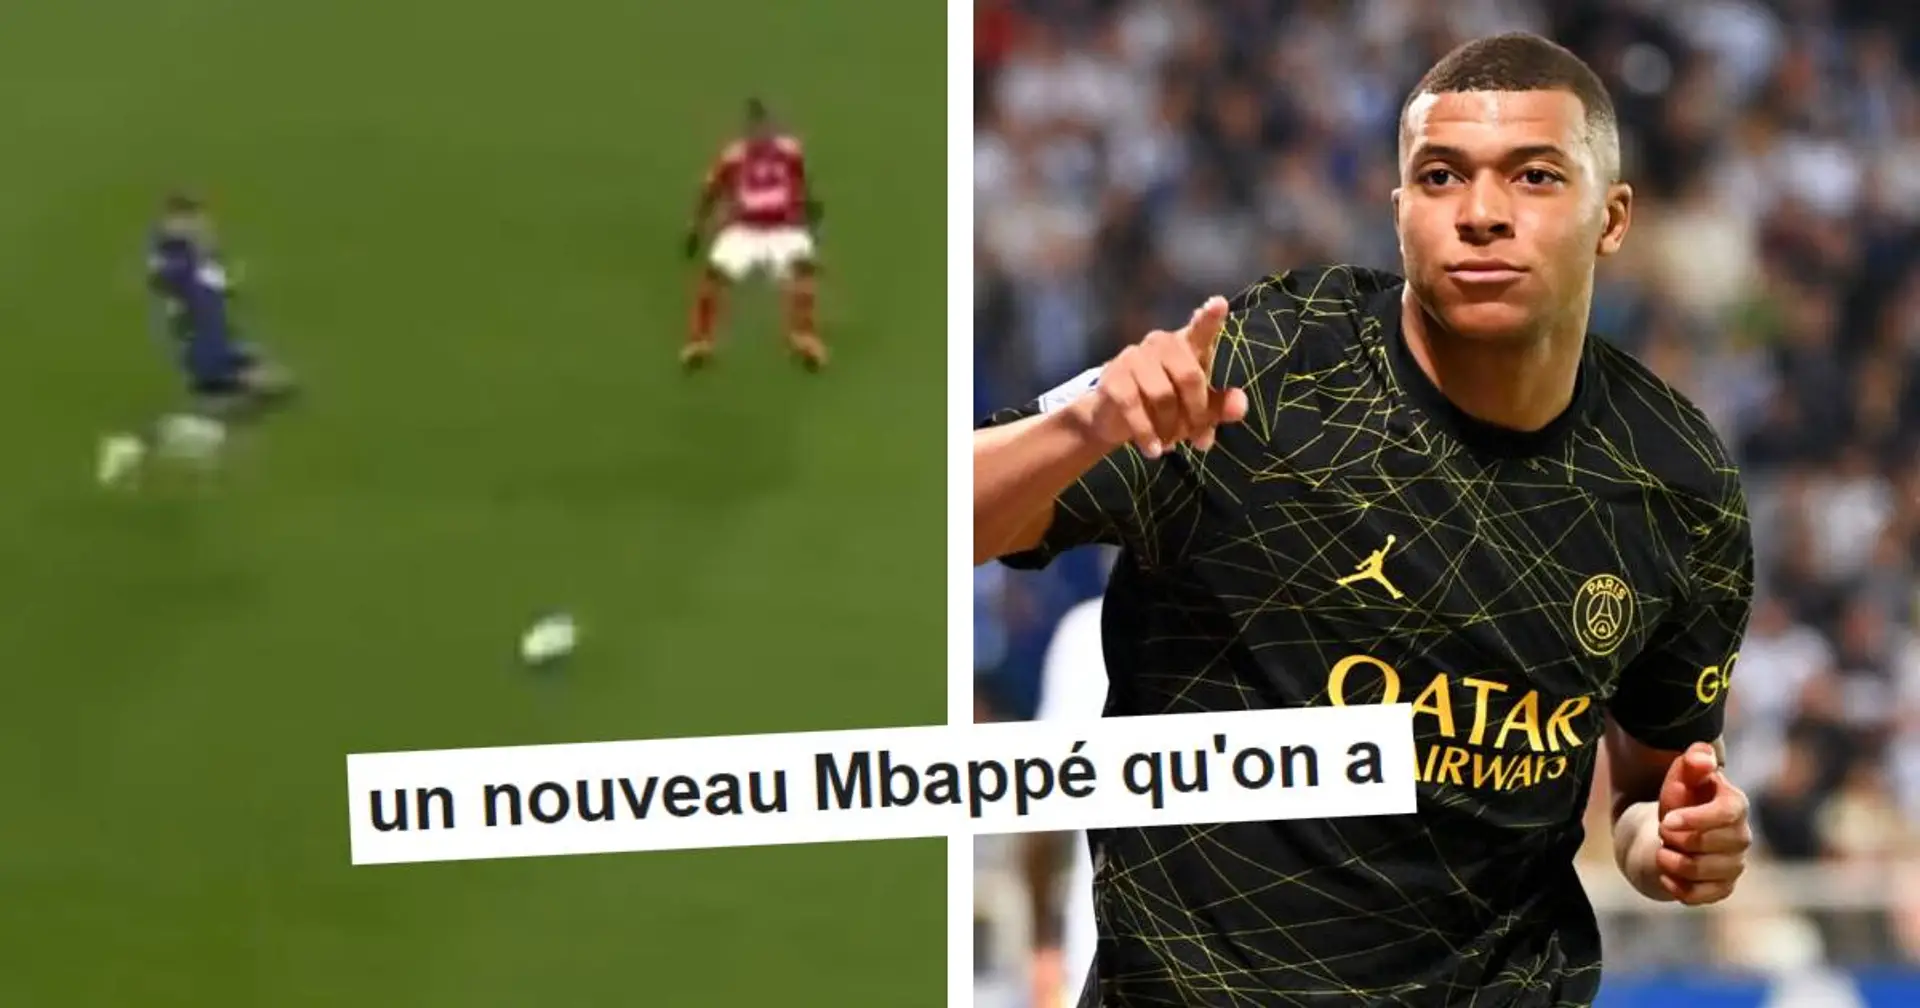 "Elle est à encadrer celle-là" : le moment qui montre que Mbappé avait la niaque vs Brest dévoilé - les fans surpris